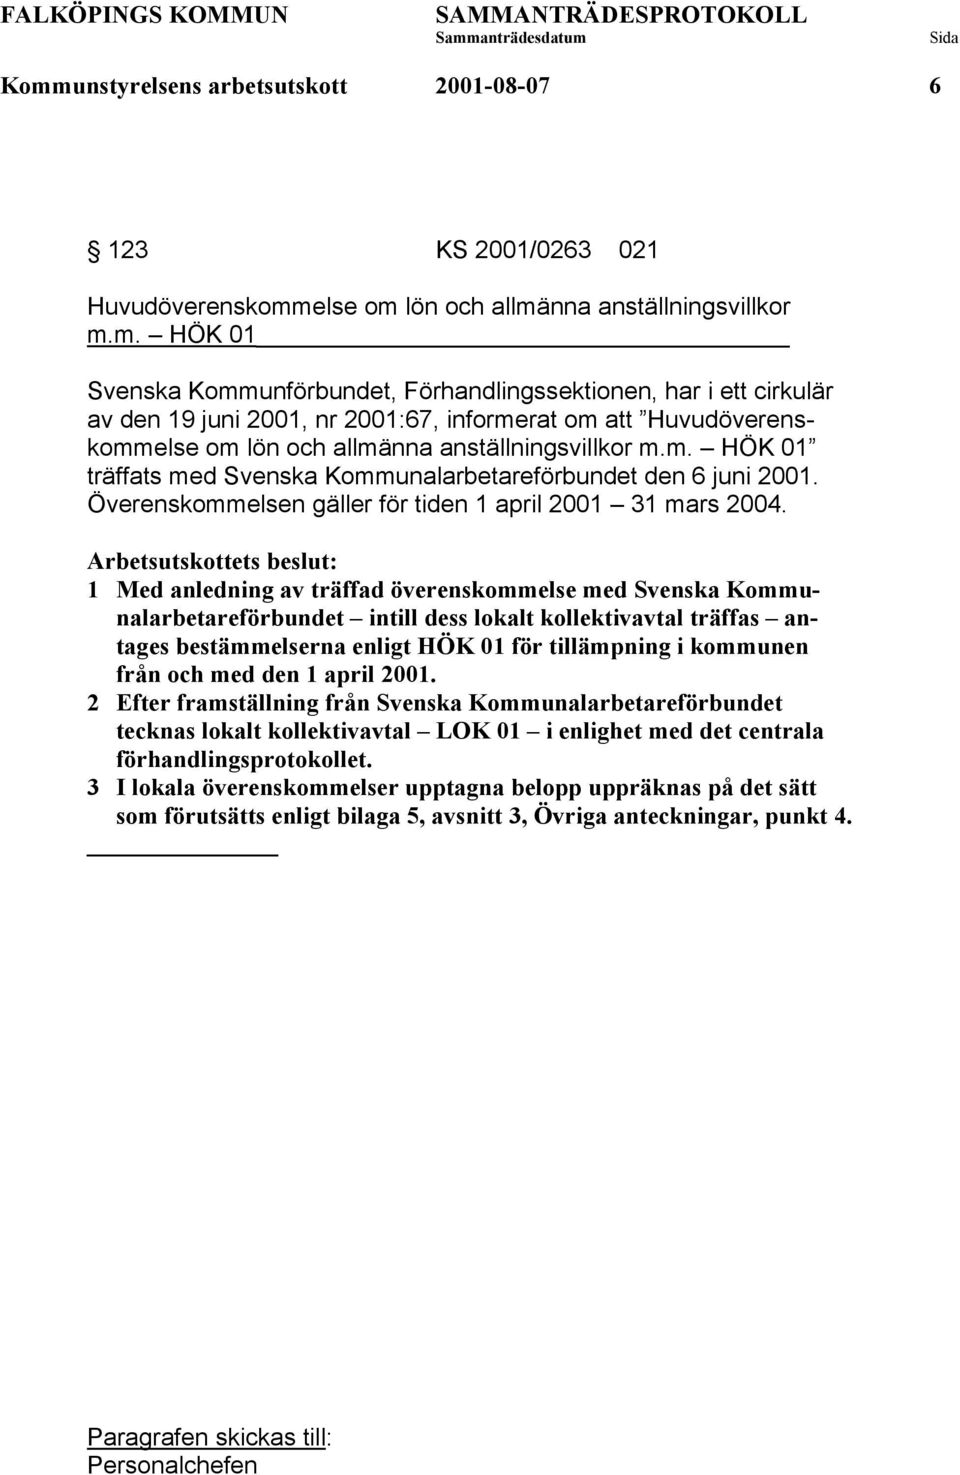 1 Med anledning av träffad överenskommelse med Svenska Kommunalarbetareförbundet intill dess lokalt kollektivavtal träffas antages bestämmelserna enligt HÖK 01 för tillämpning i kommunen från och med